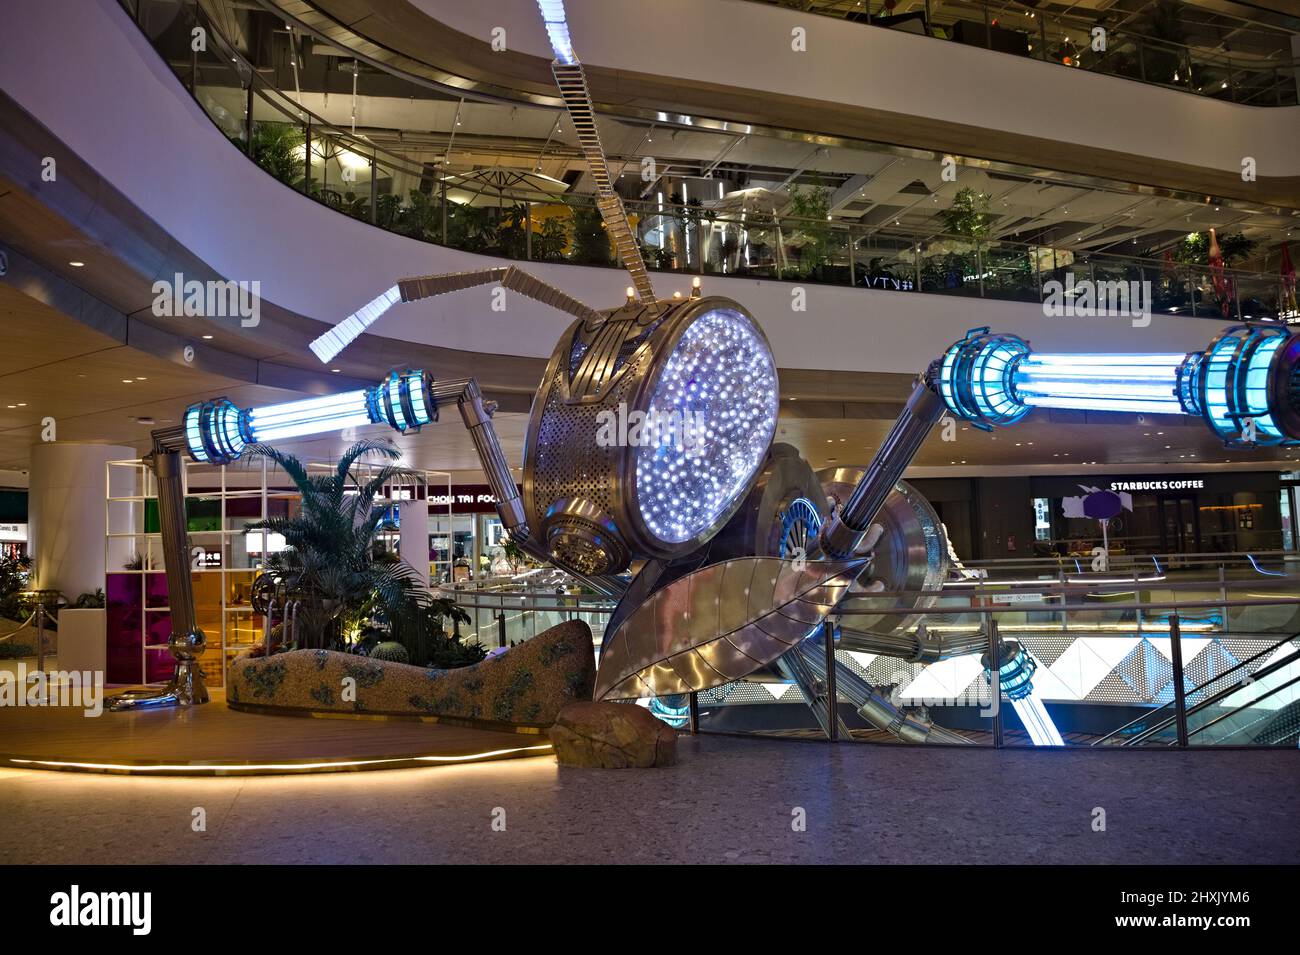 Centro comercial de moda con gran escultura de robots de insectos en China continental Foto de stock